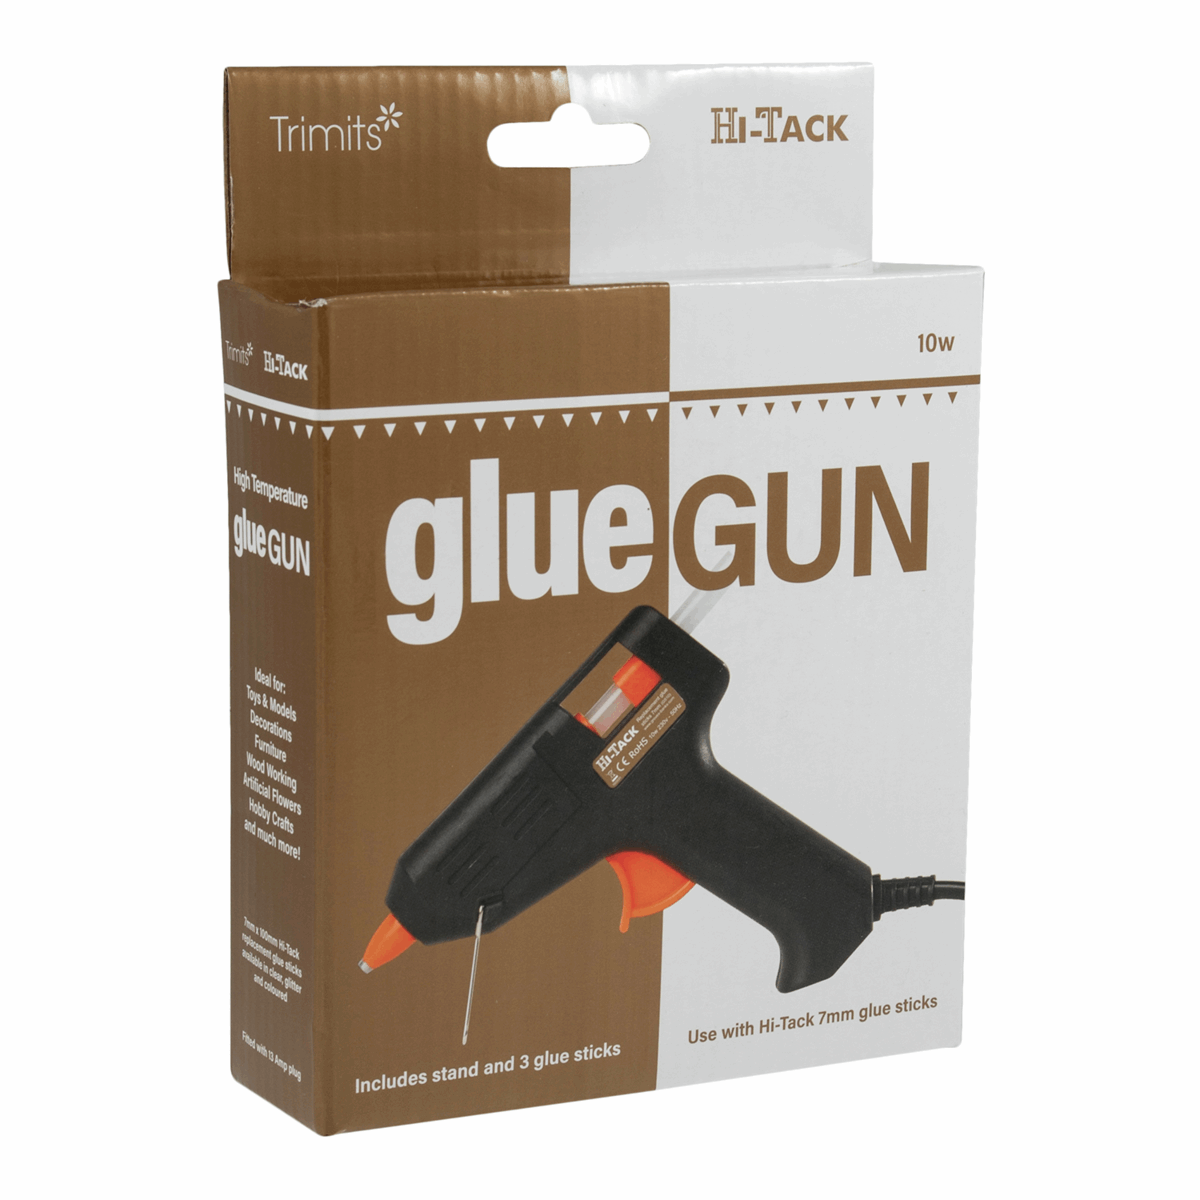 Trimits Hi-Tack Glue Gun (MG100) Mini 10w / Includes stand and 3 x glue sticks